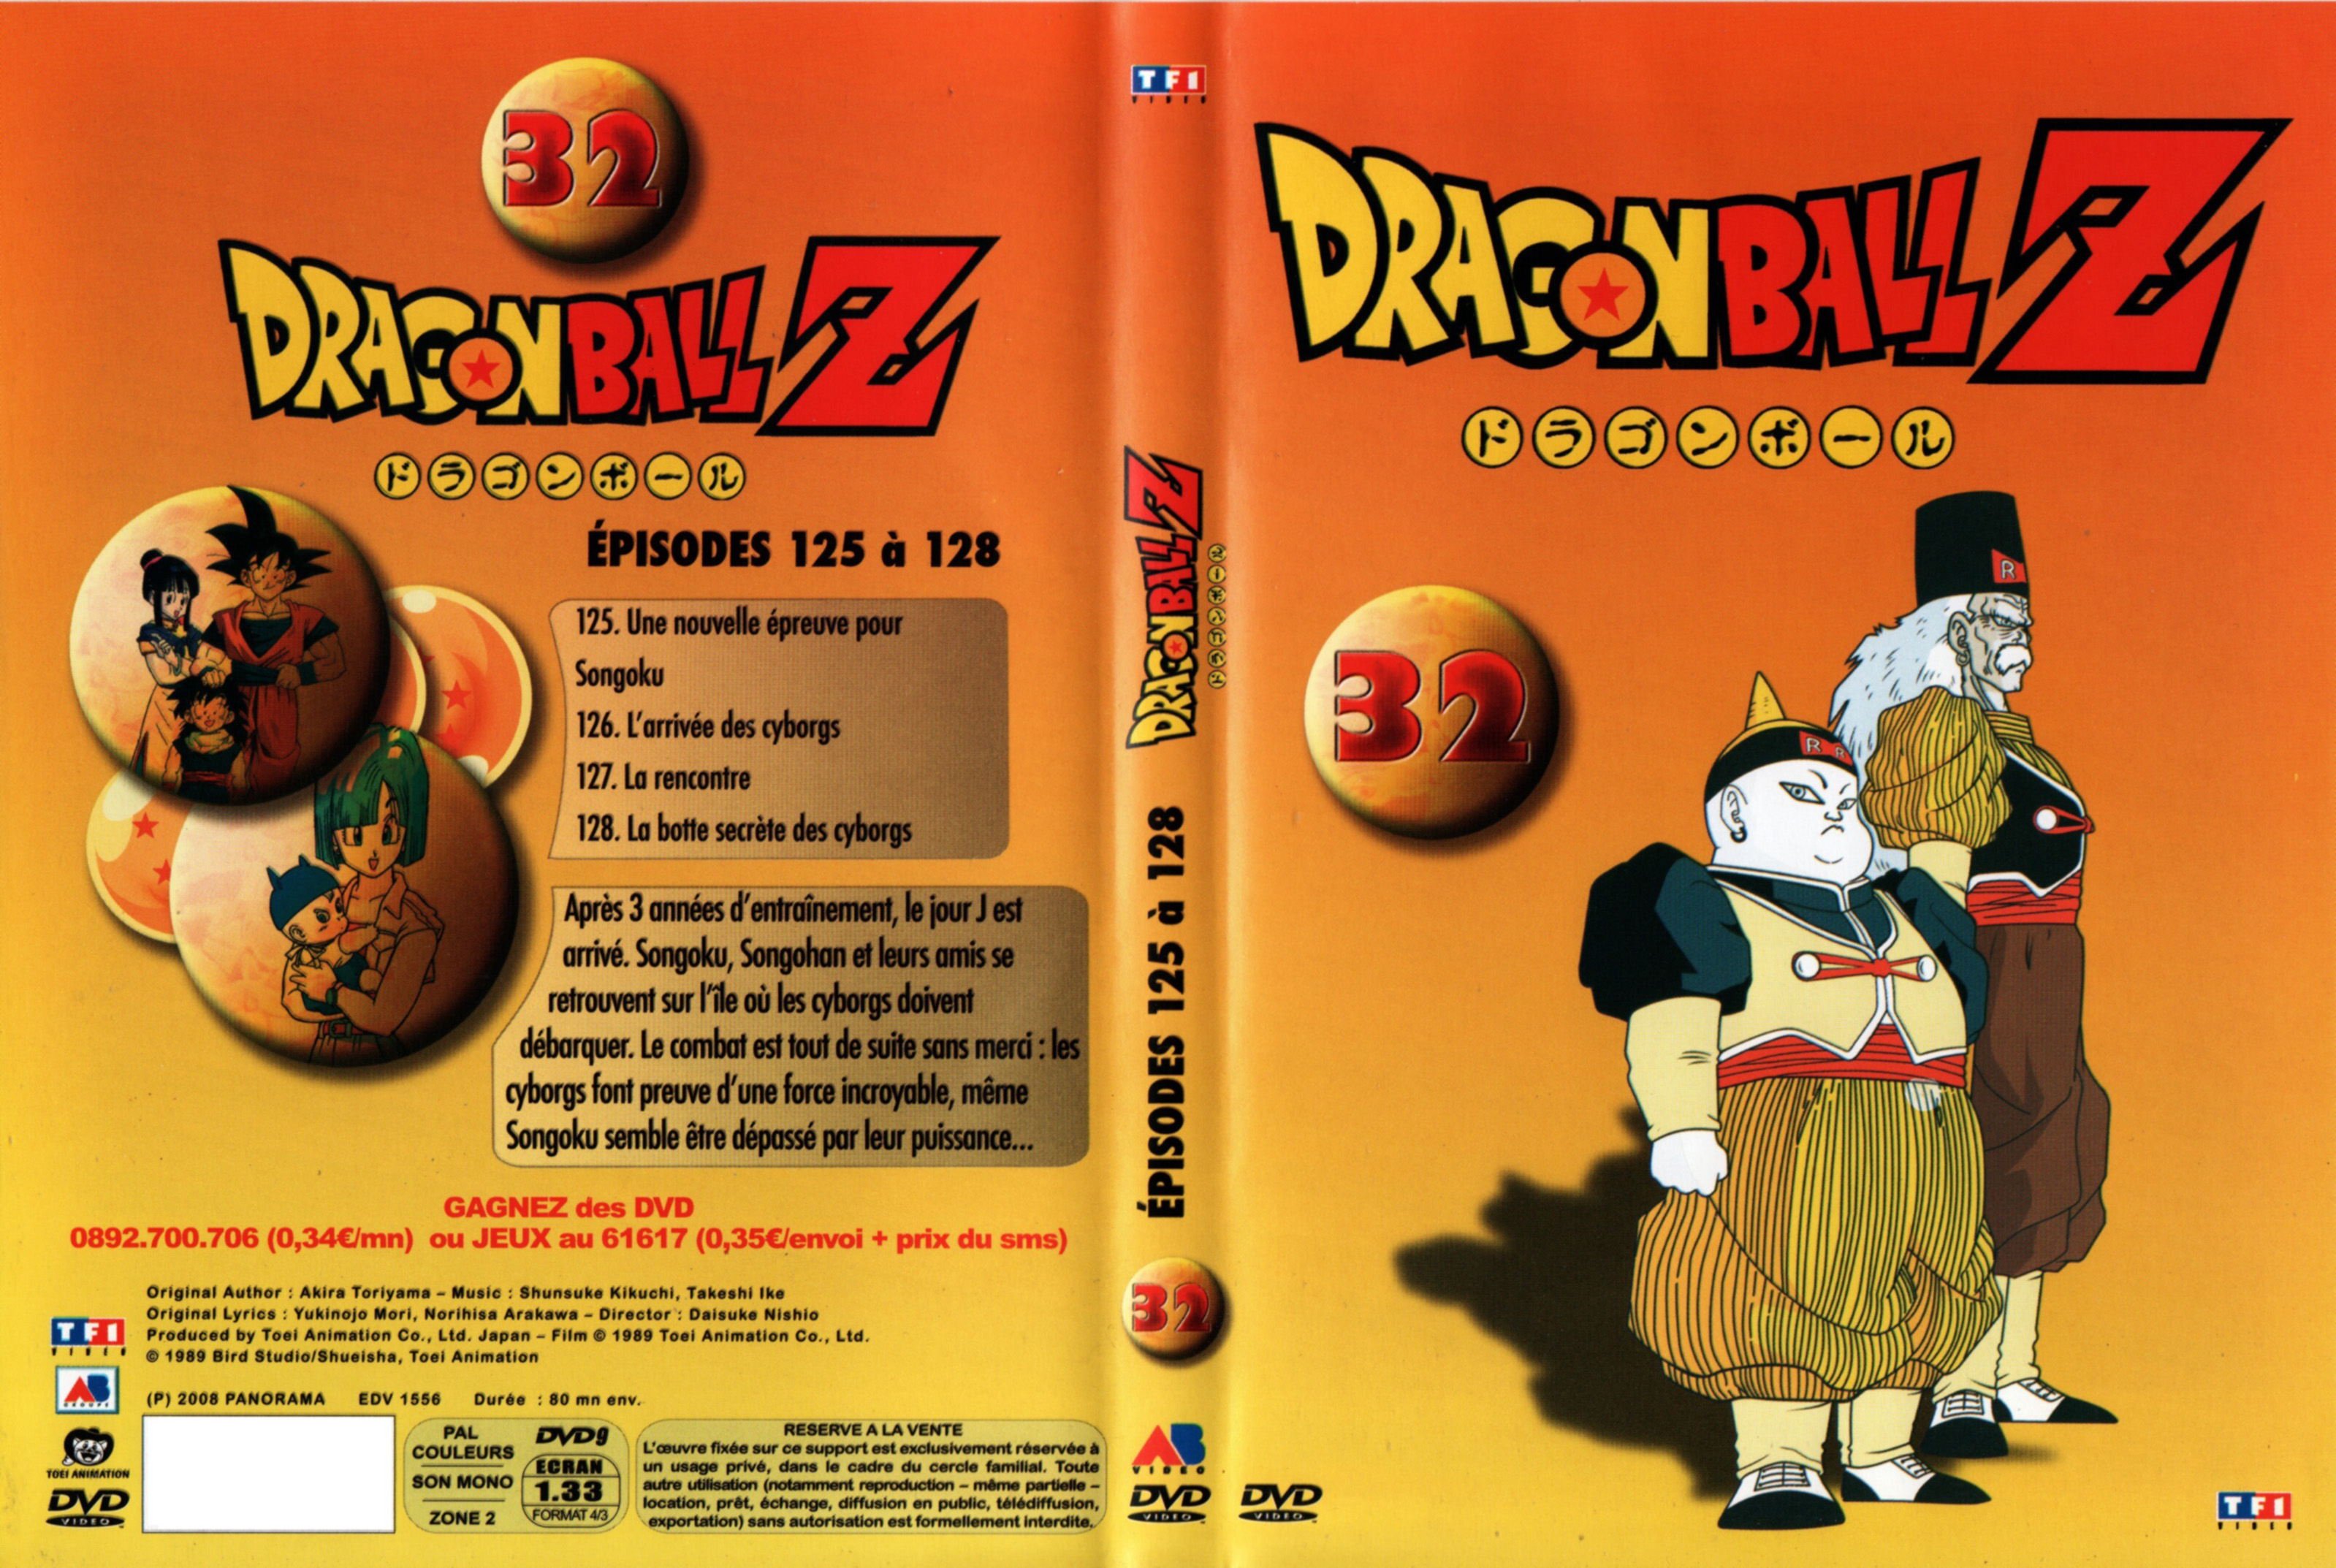 Jaquette DVD Dragon Ball Z vol 32 v2